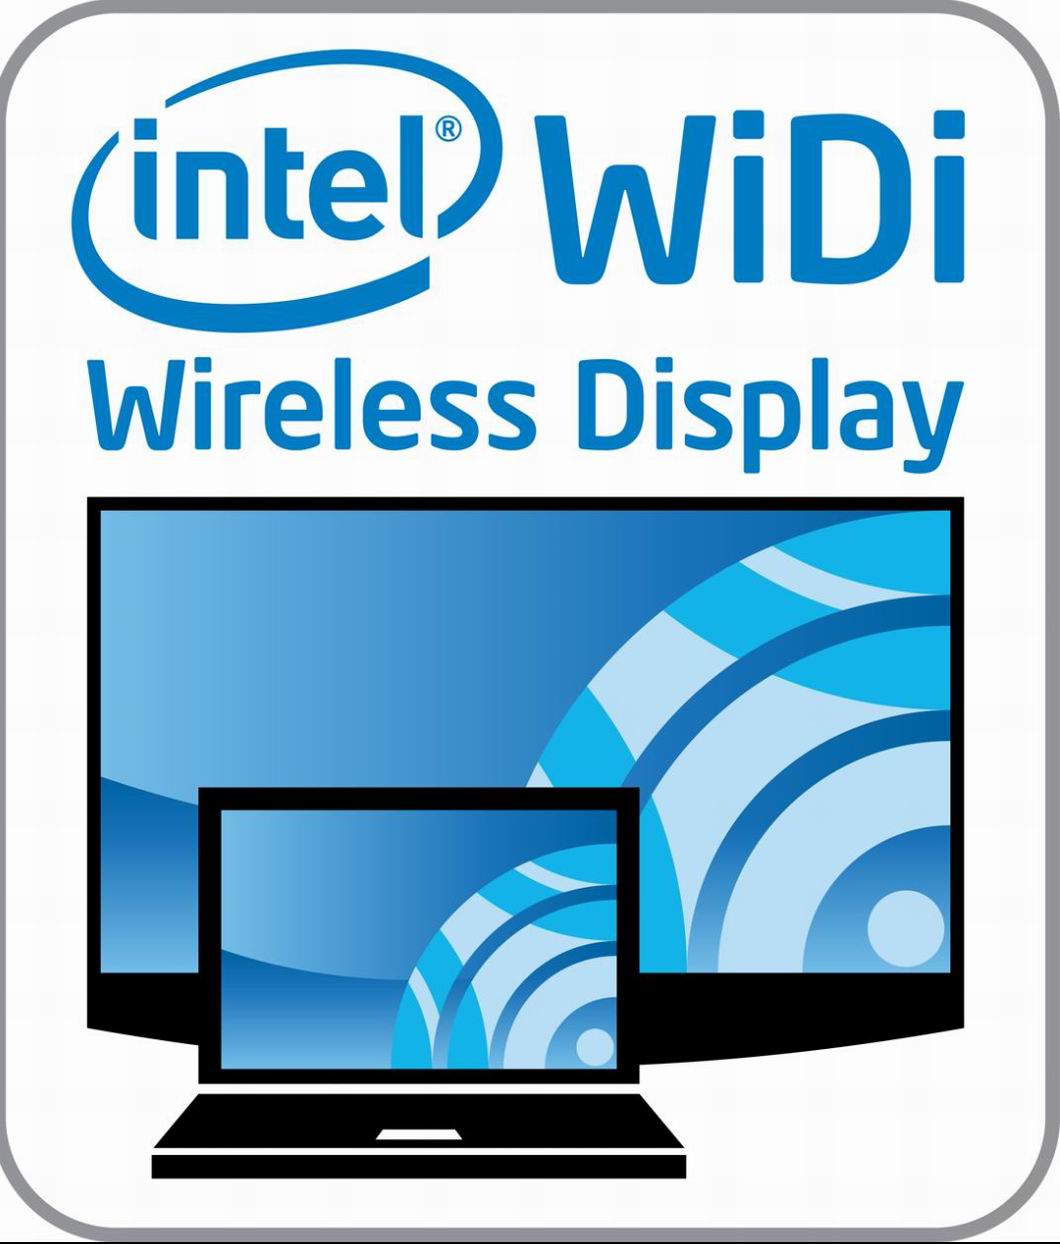 intel widi wireless display